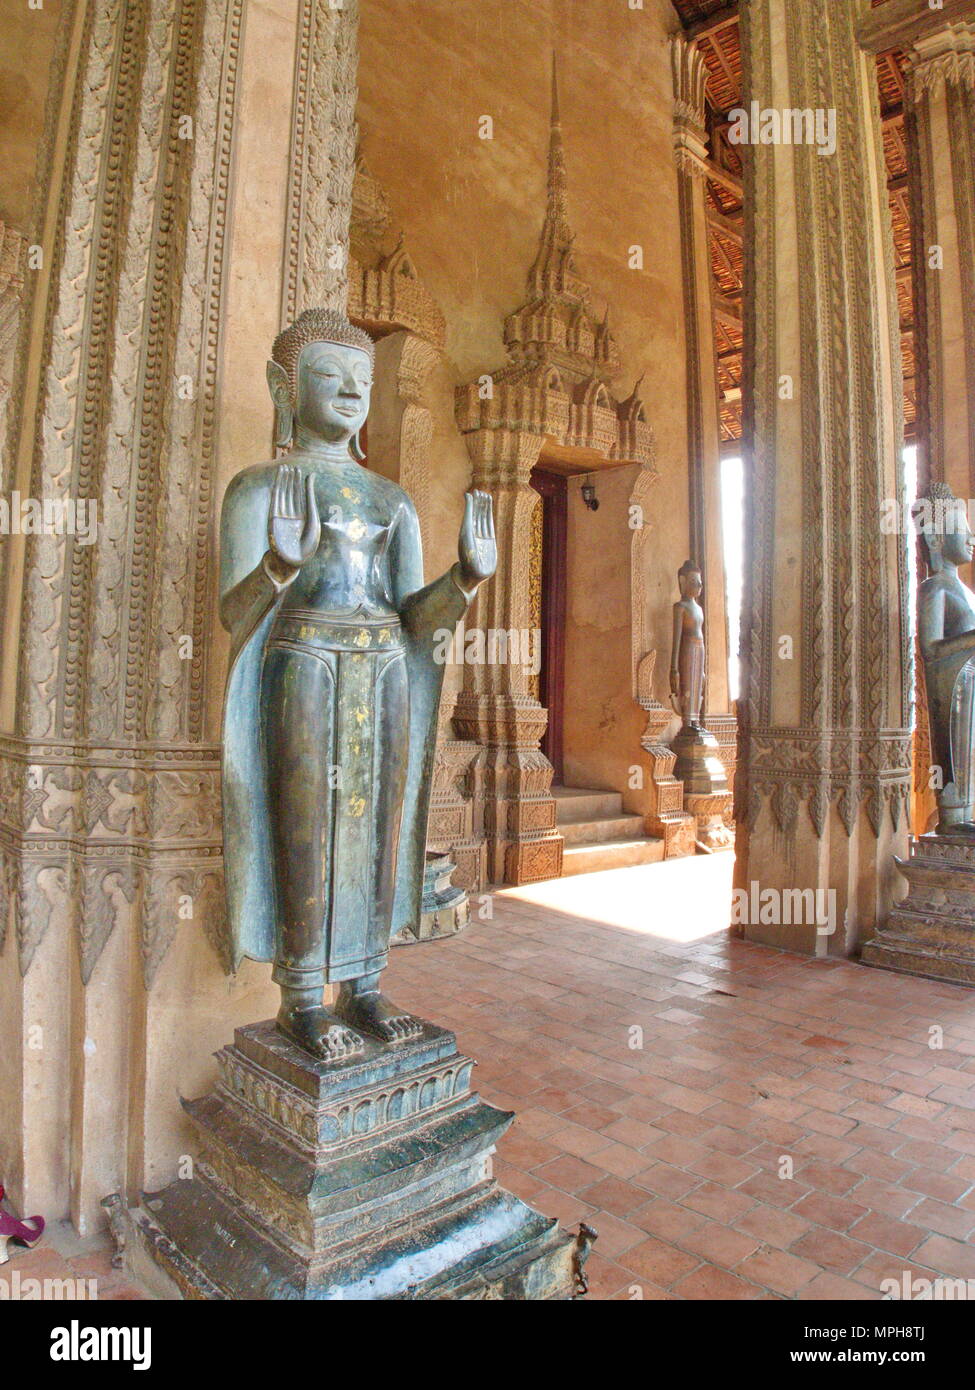 Wat Si Muang o Simuong tempio è un tempio buddista situato in Vientiane, la capitale del Laos. Viaggiare in 2013, 8 dicembre. Foto Stock